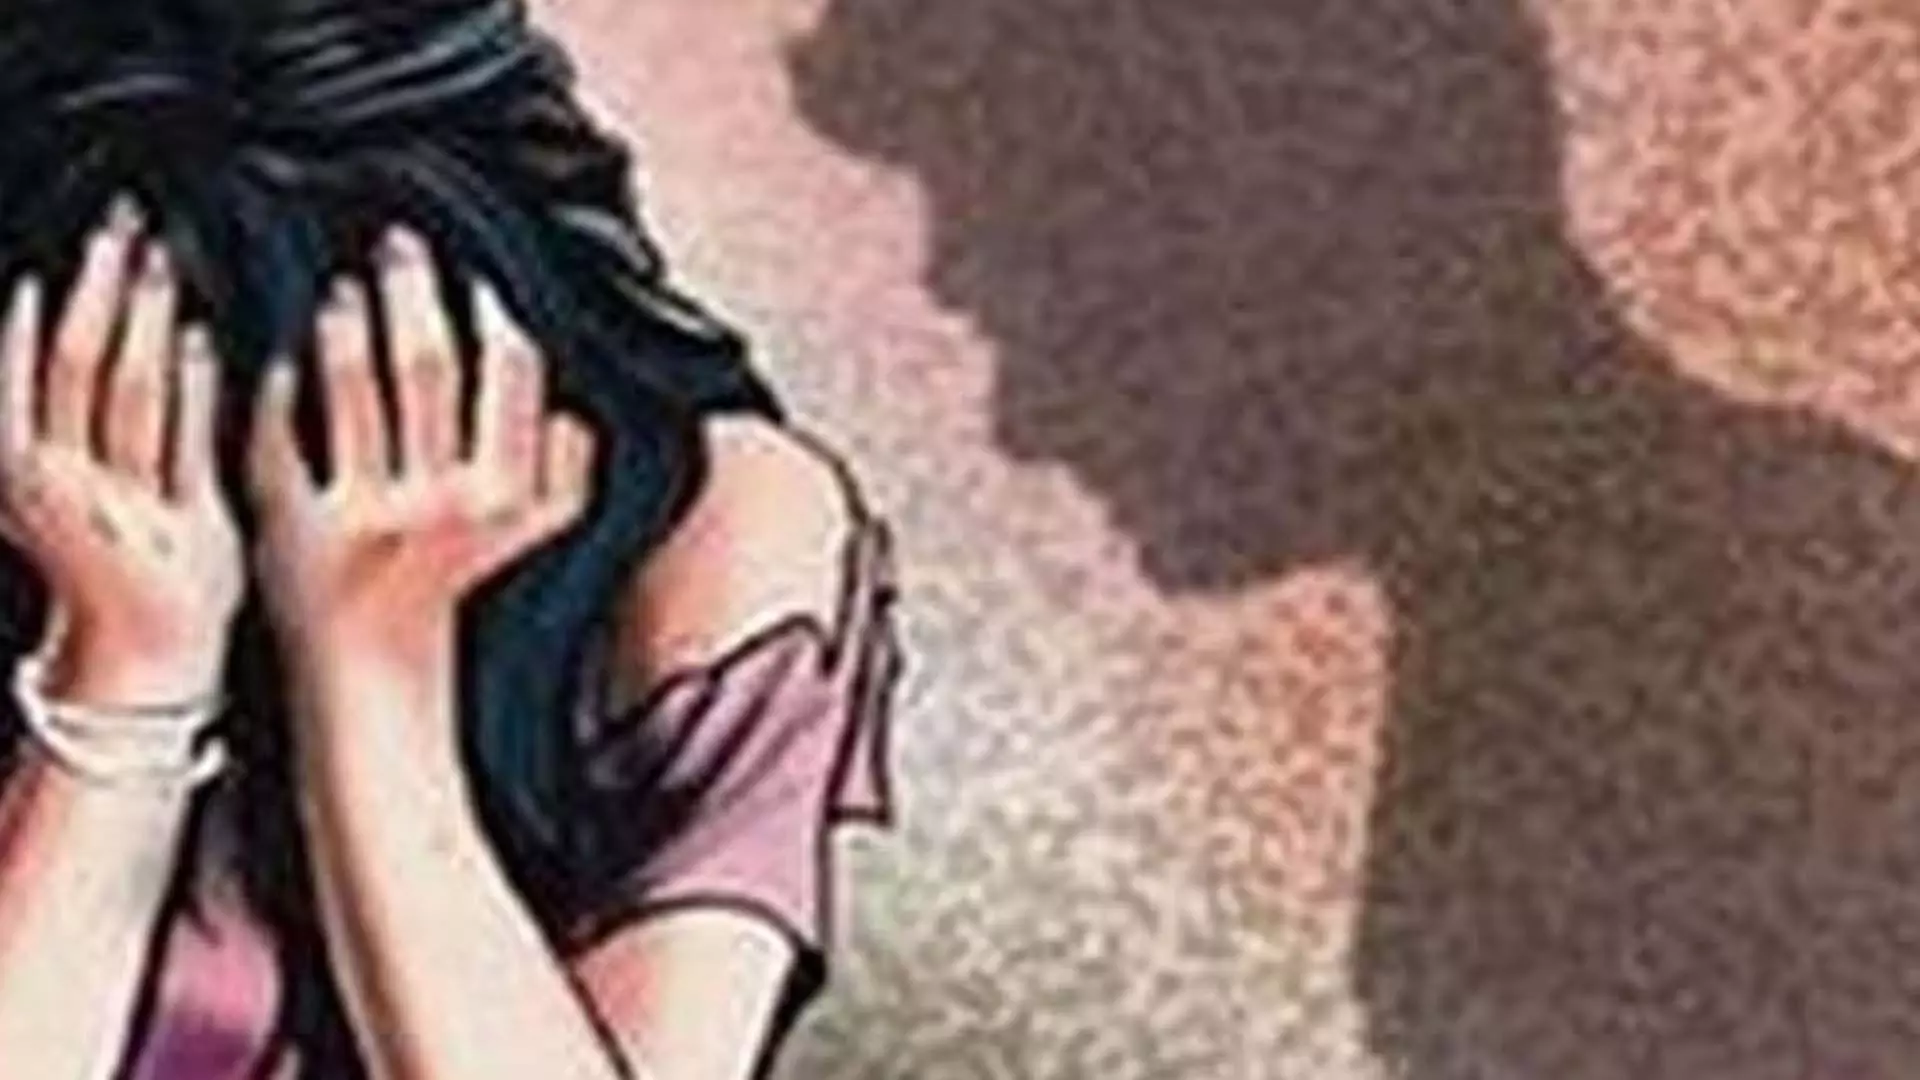 नाबालिग लड़की से बलात्कार कर उसे गर्भवती करने के जुर्म में 31 वर्षीय व्यक्ति को 10 साल की जेल